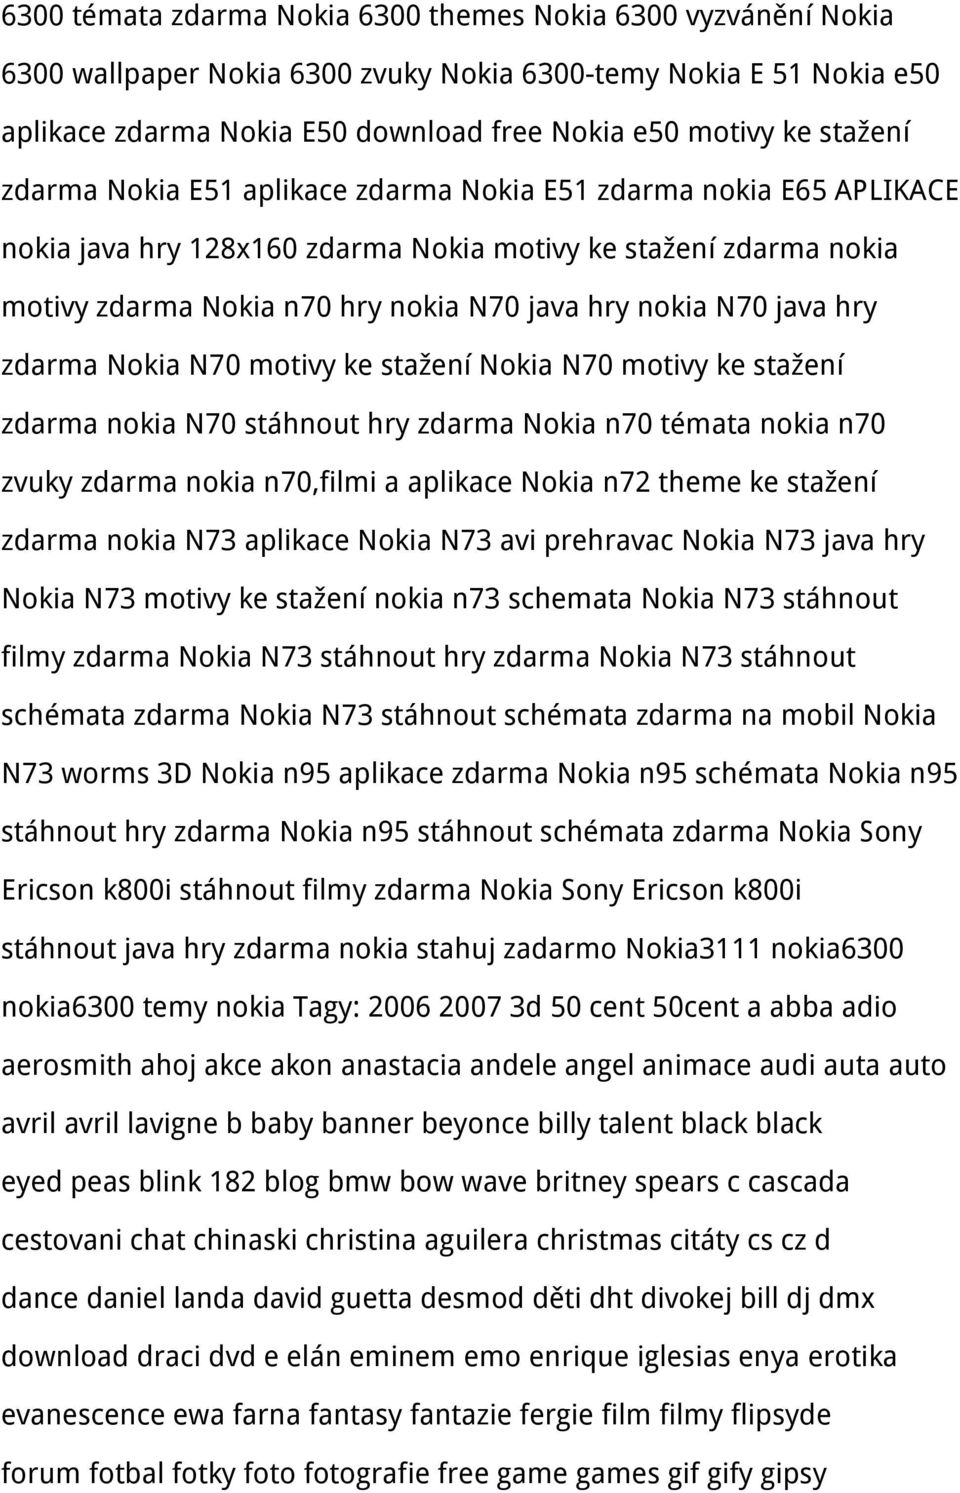 N70 java hry zdarma Nokia N70 motivy ke stažení Nokia N70 motivy ke stažení zdarma nokia N70 stáhnout hry zdarma Nokia n70 témata nokia n70 zvuky zdarma nokia n70,filmi a aplikace Nokia n72 theme ke